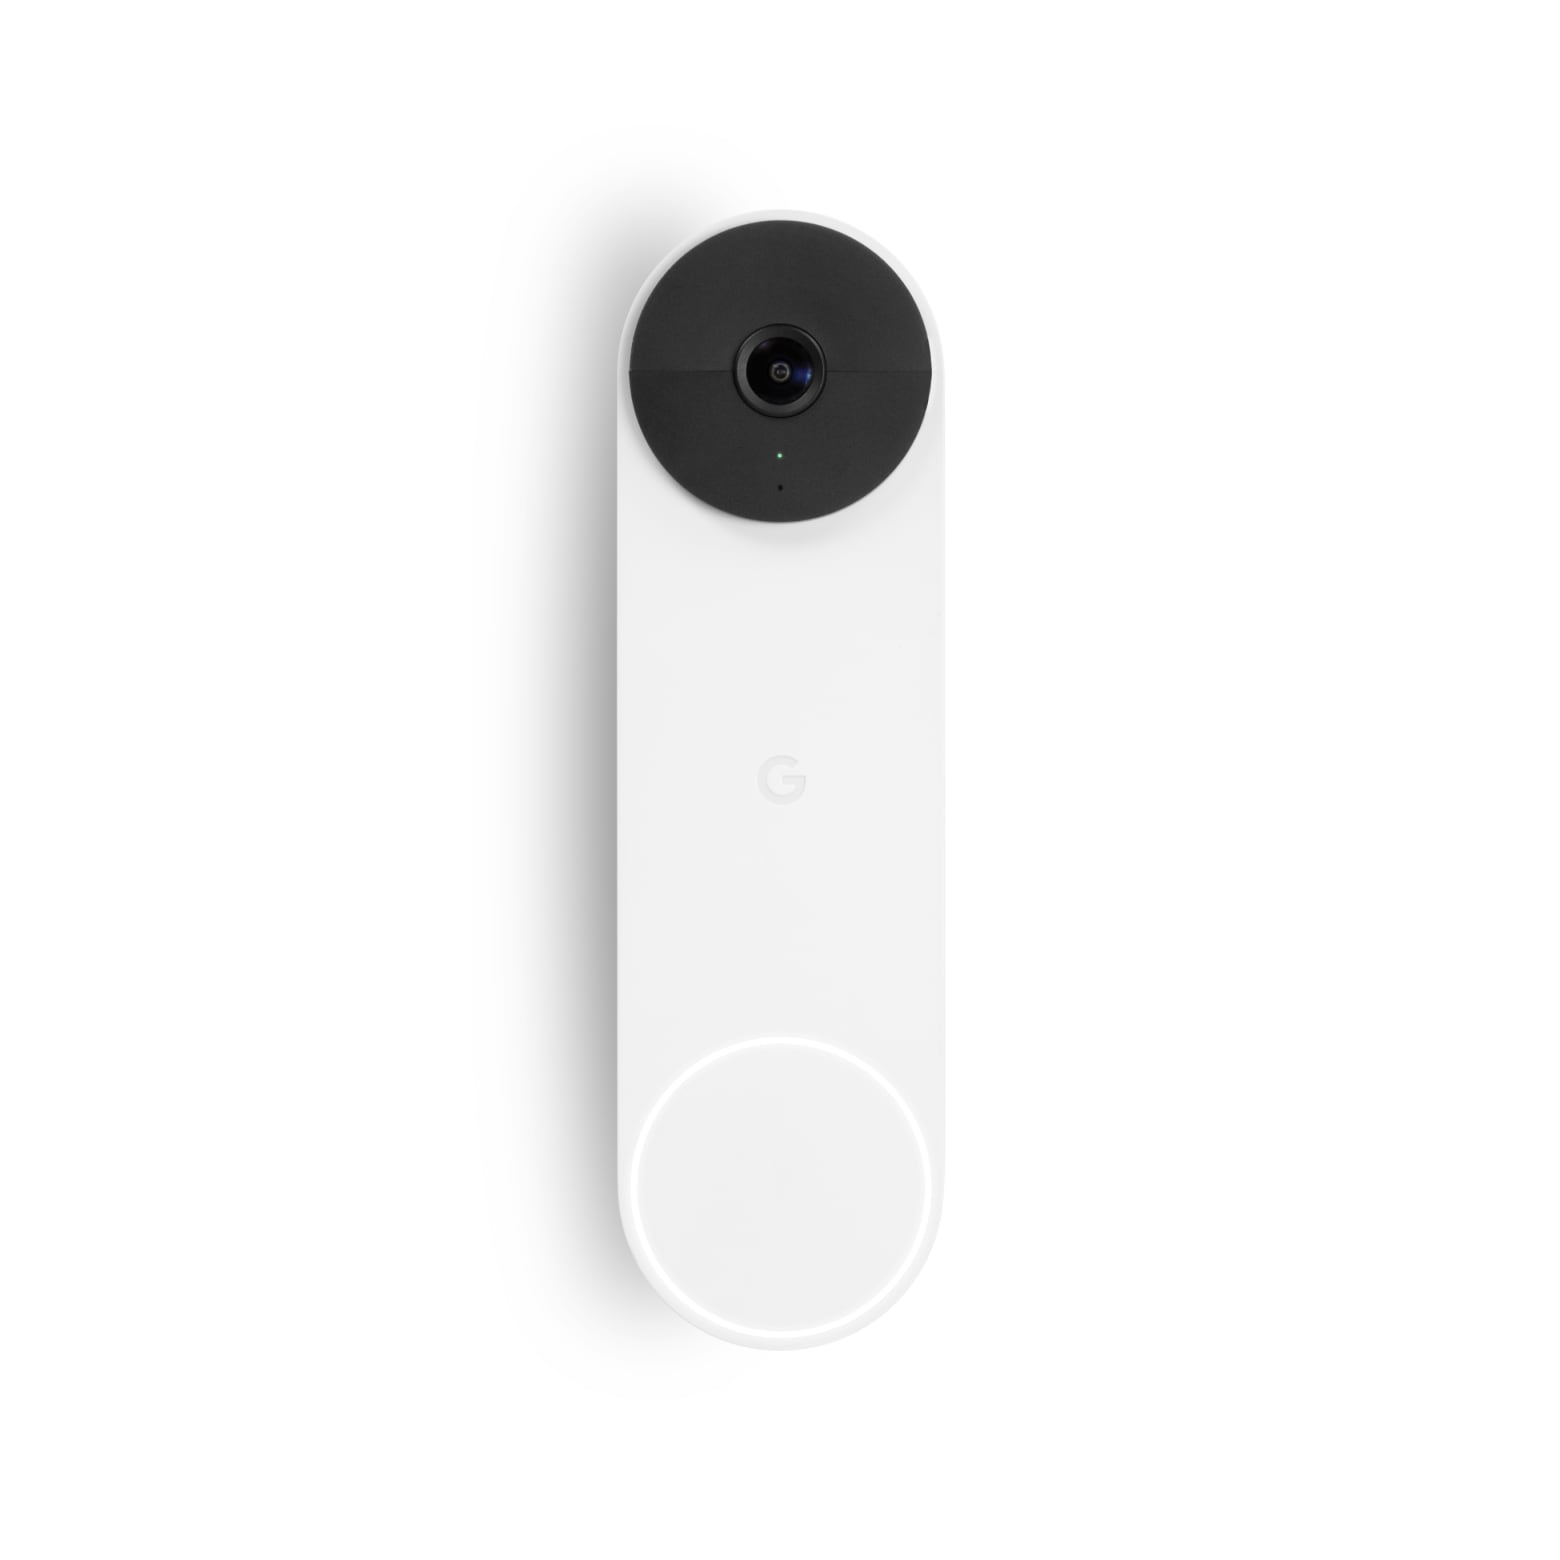 Google Nest Doorbell Camera | Video Doorbells | ADT.com®